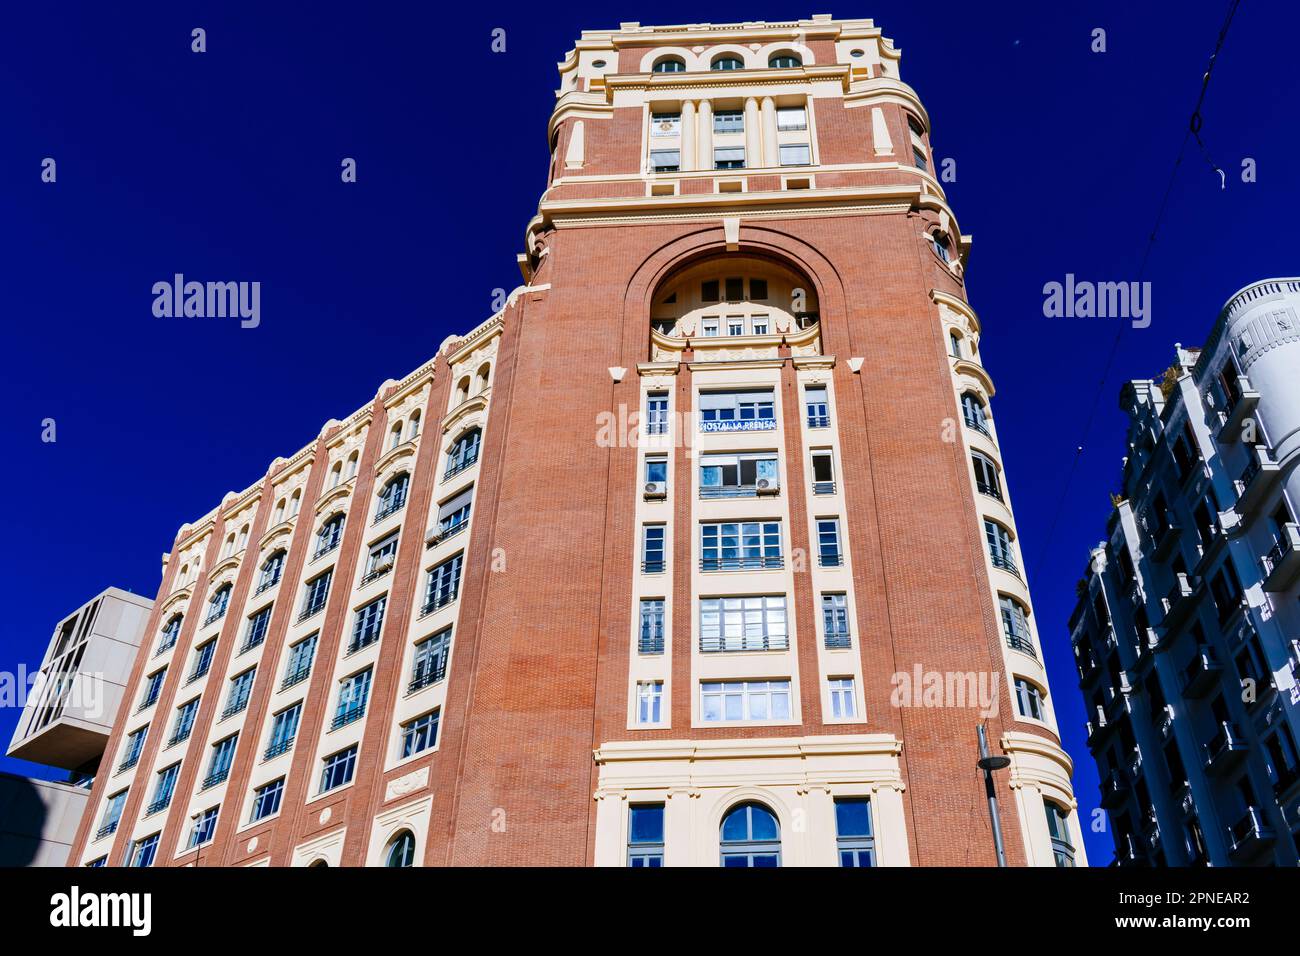 Le Palacio de la Prensa est un bâtiment en briques situé à Madrid. Il est situé dans la Gran Vía, en face de la place Callao. Commandé par la presse de Madrid Banque D'Images